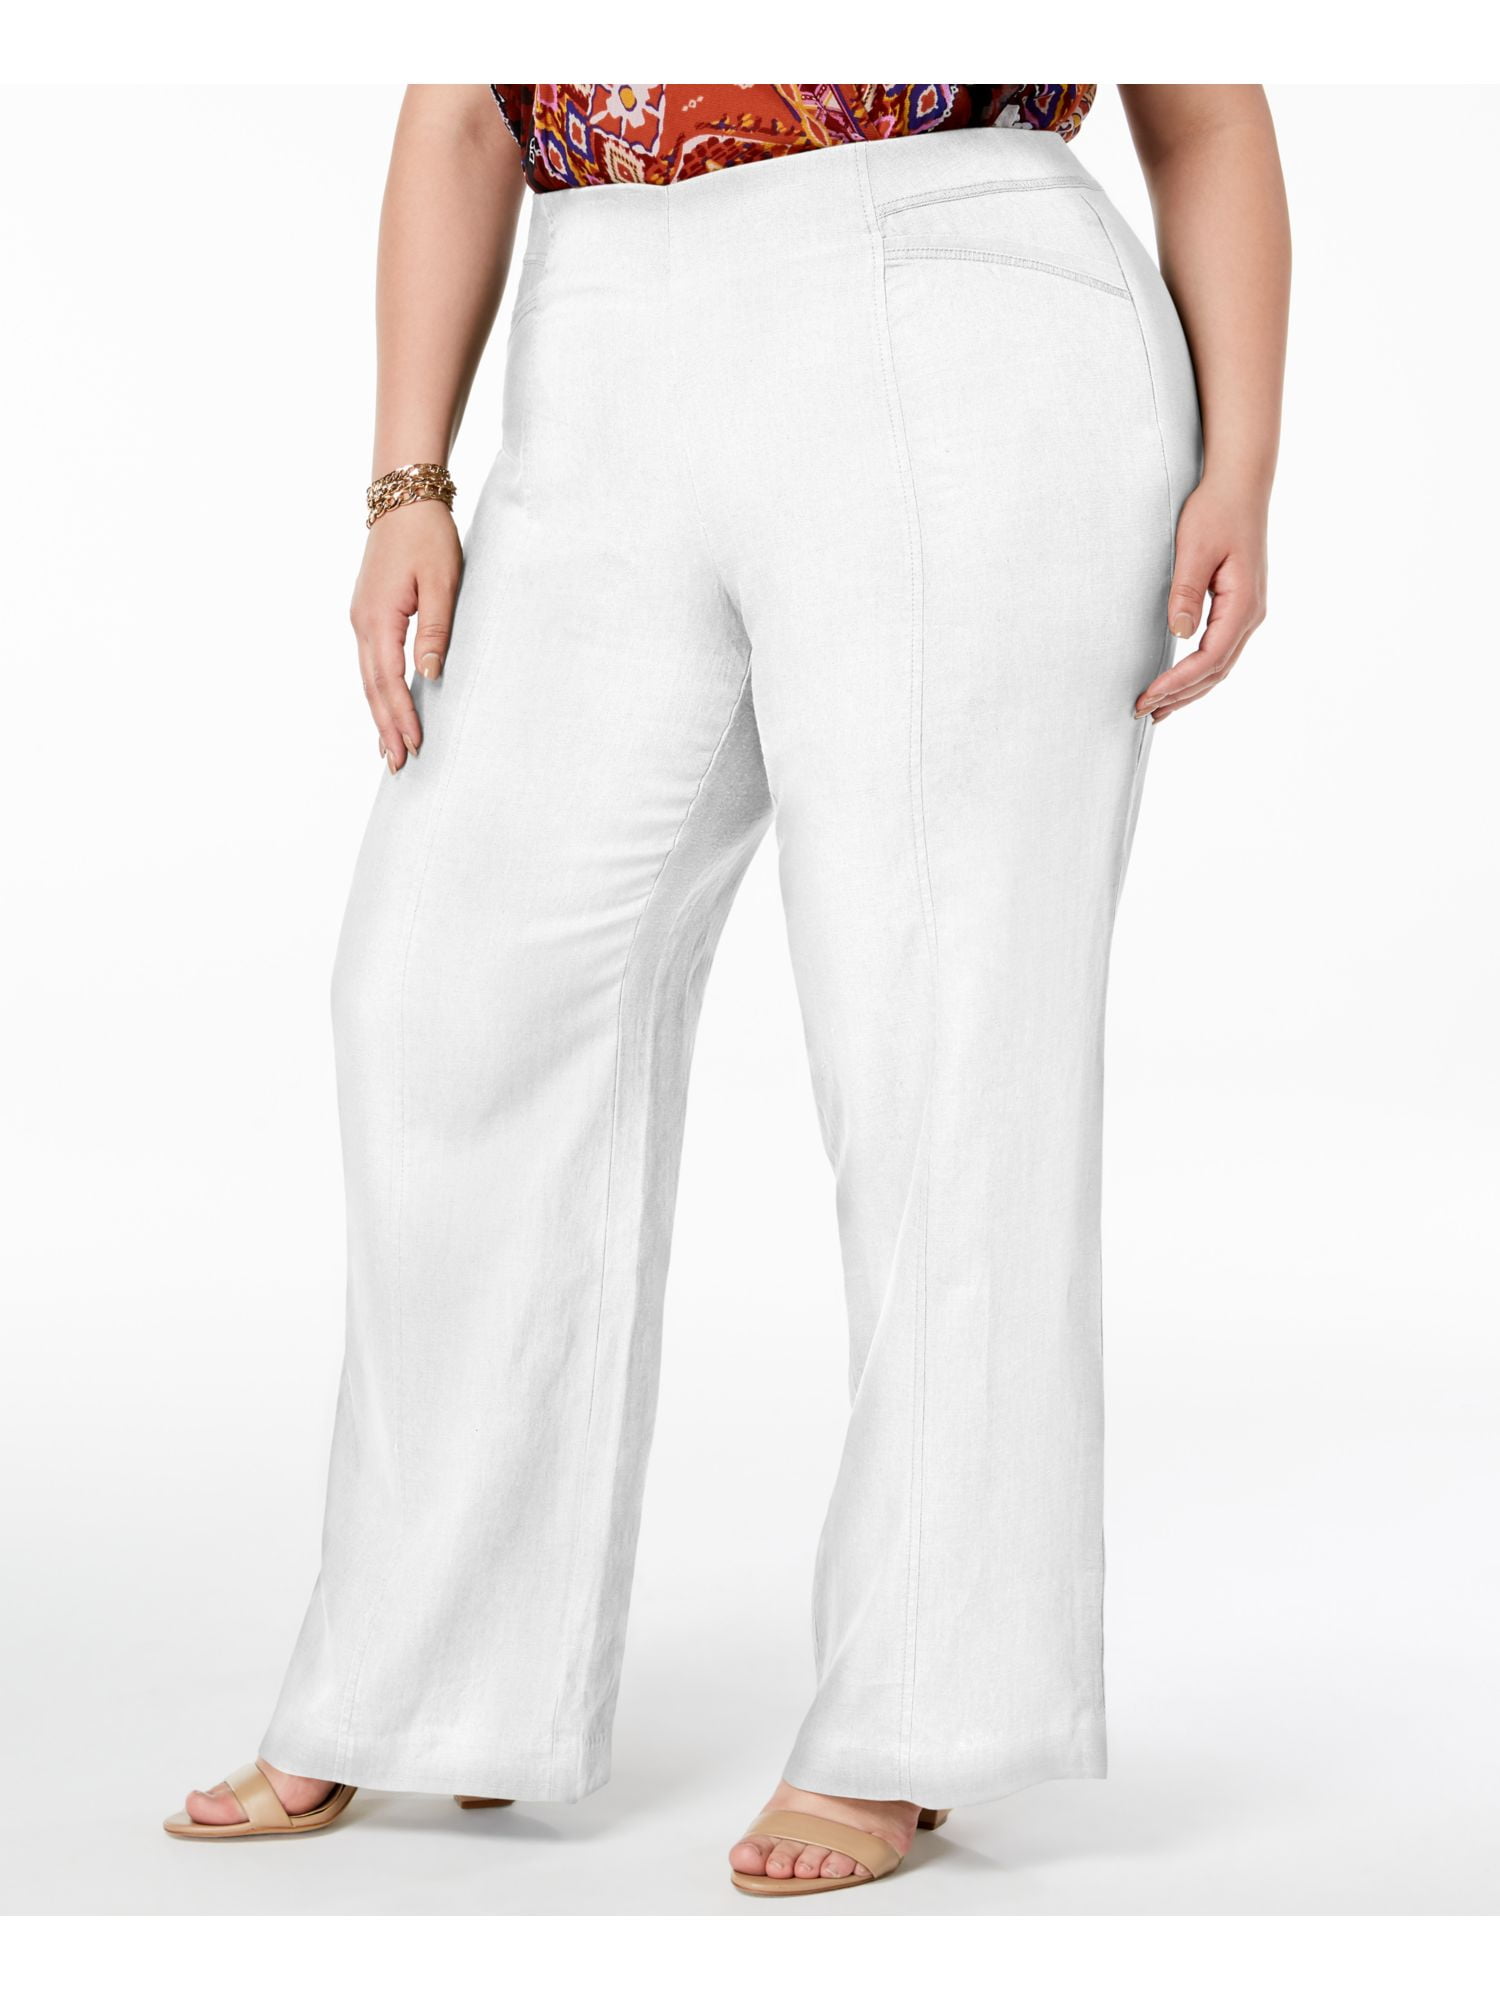 Plus size White Pants | Dresses Images 2022